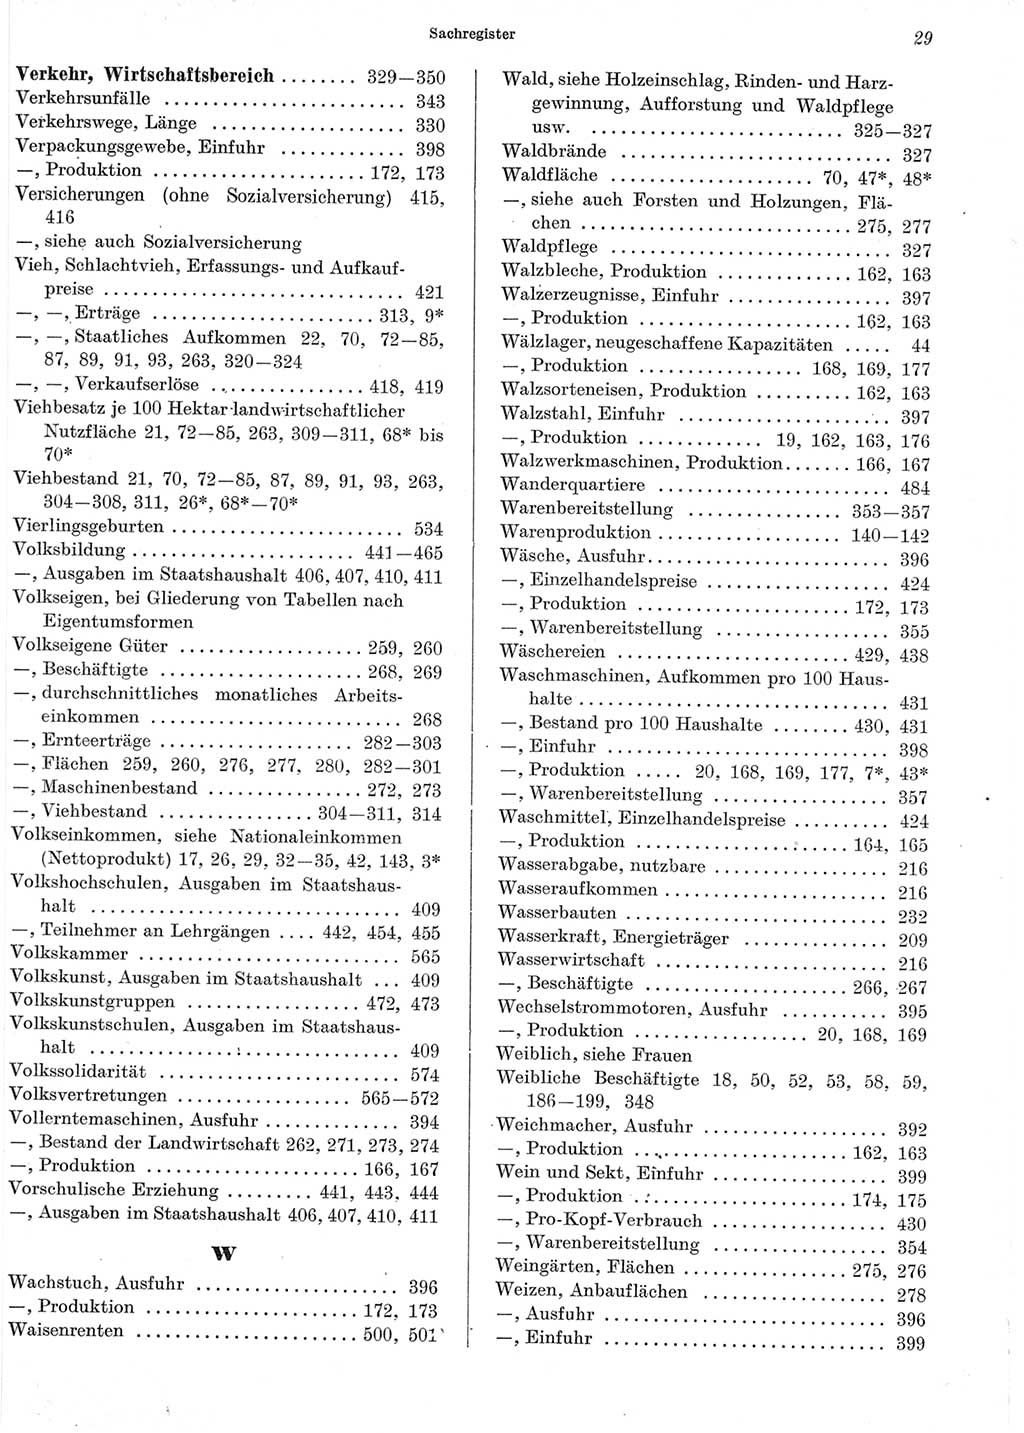 Statistisches Jahrbuch der Deutschen Demokratischen Republik (DDR) 1965, Seite 29 (Stat. Jb. DDR 1965, S. 29)